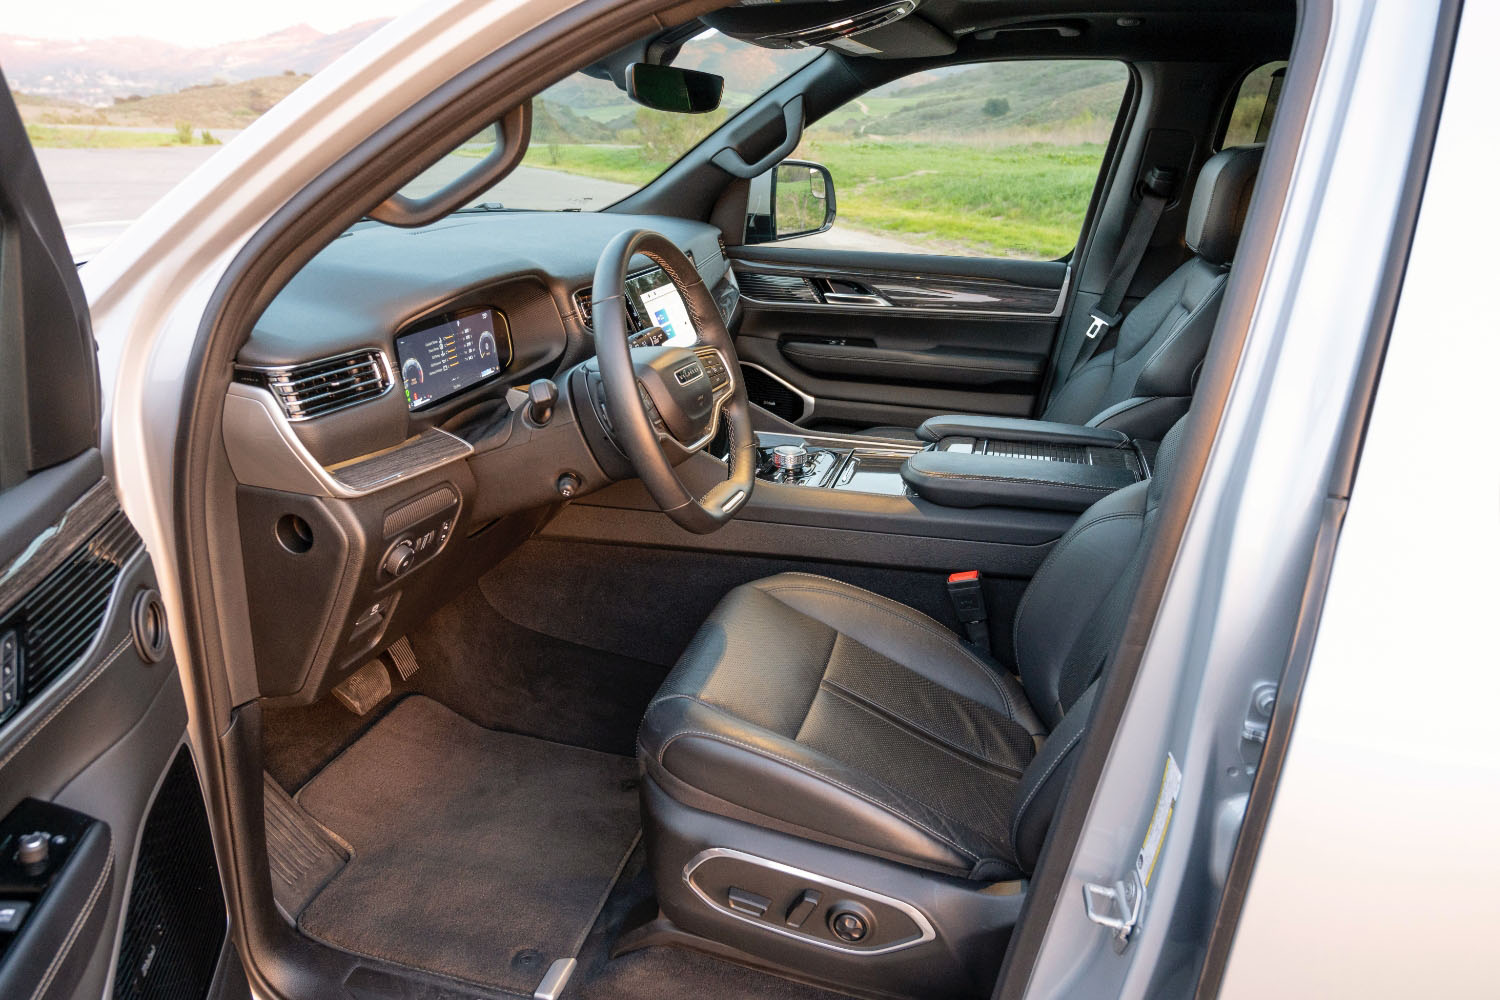 2022 Jeep Wagoneer Series III interior, dashboard, front seats